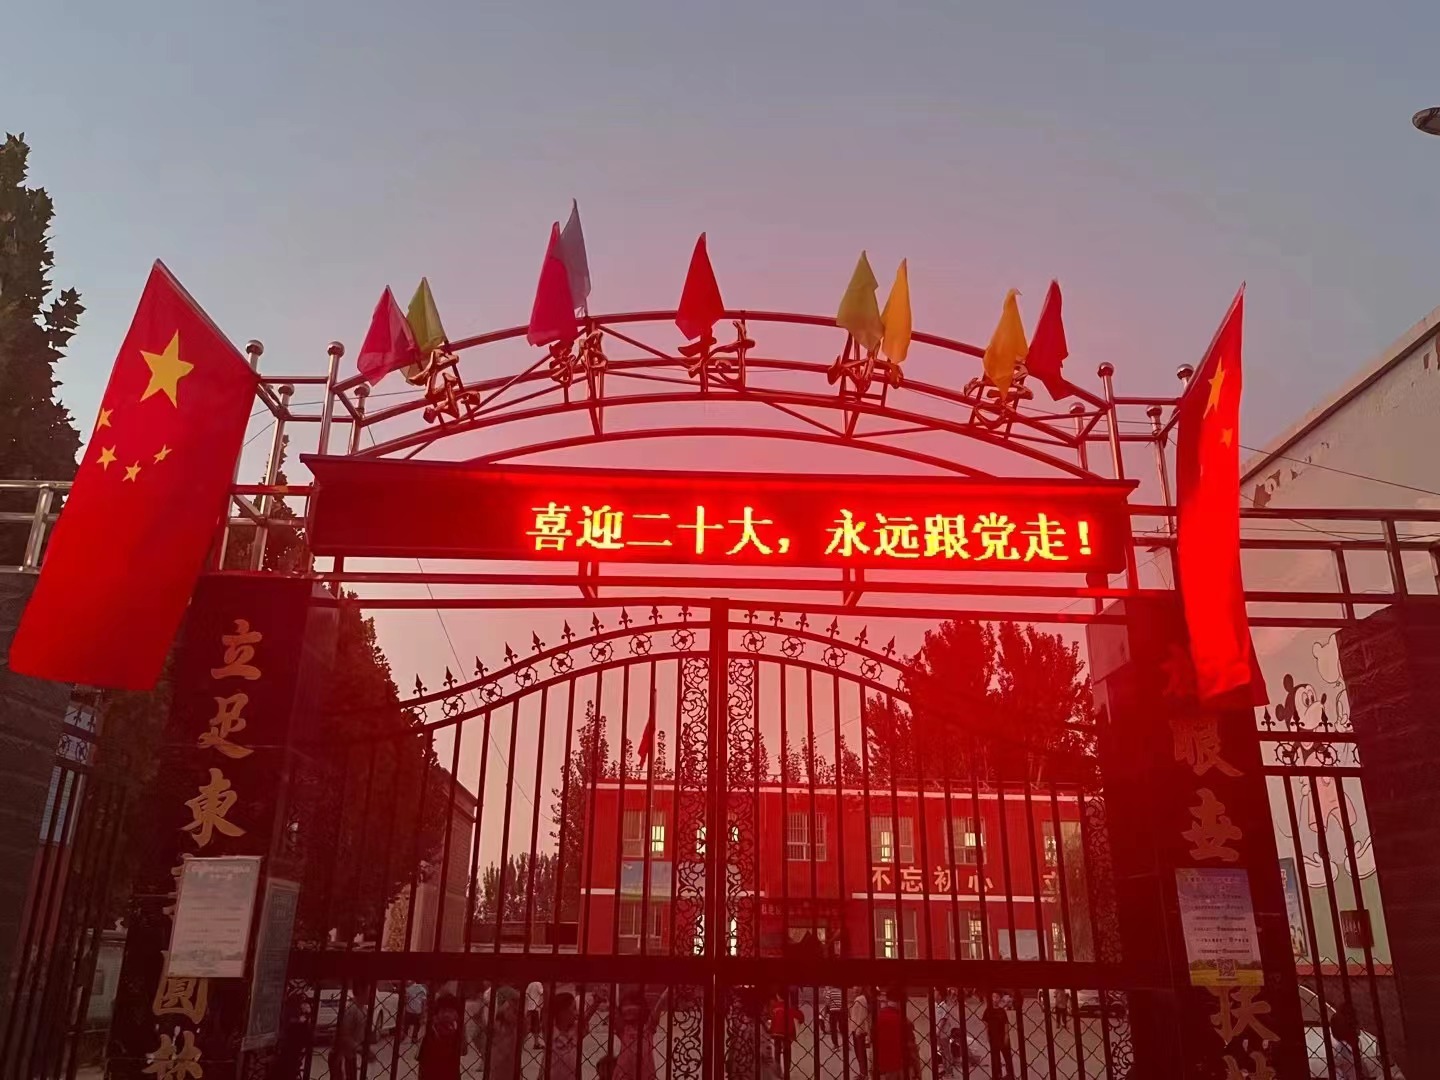 陆辛庄学校走进首都博物馆-千龙网·中国首都网